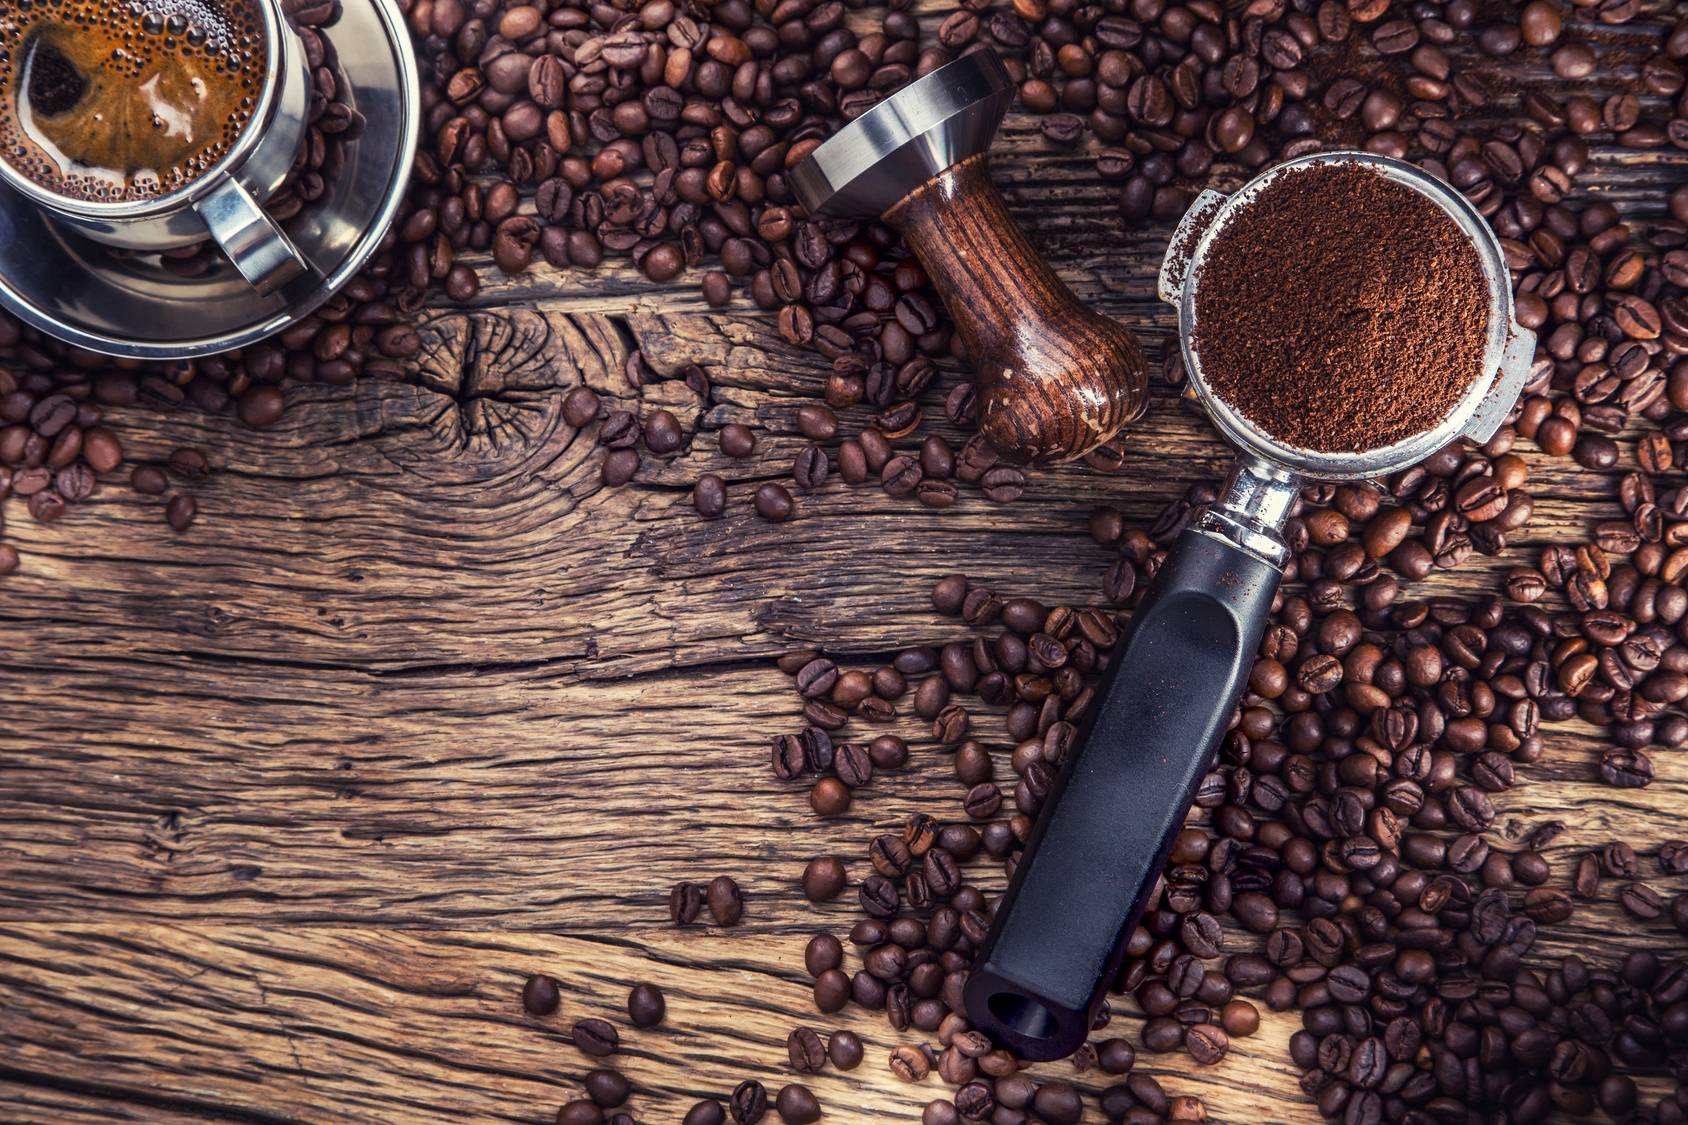 Jak parzyć kawę według zasad diety pięciu przemian? Ziarna kawy rozsypane na drewnianym stole, obok stoi filiżanka czarnej kawy i kawa już zmielona.